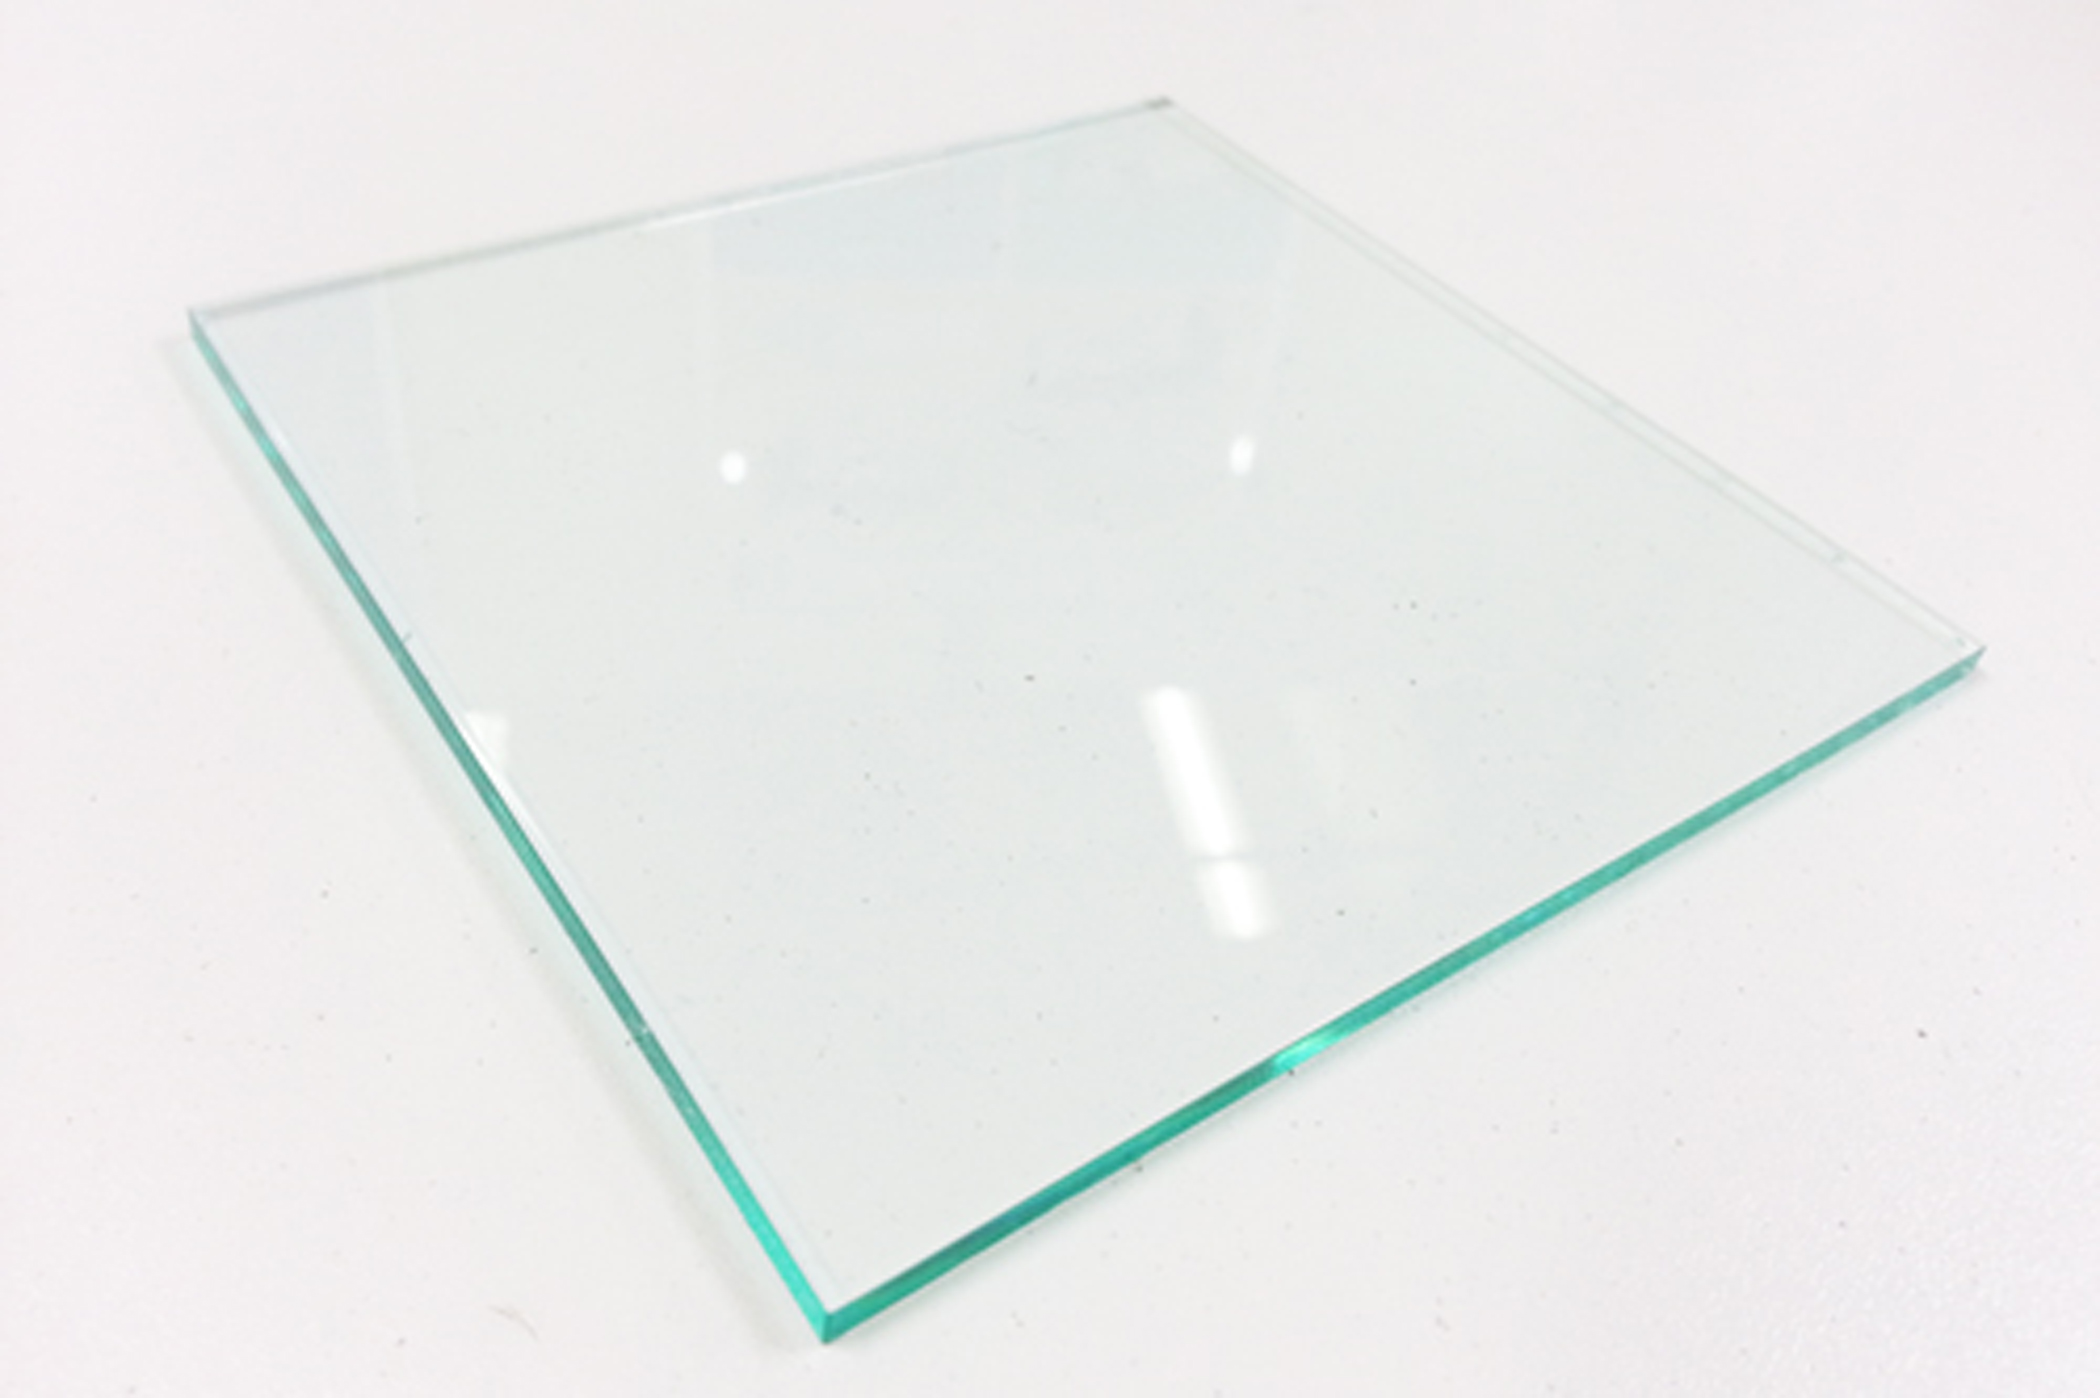 アクリル板 ガラス調キャスト板 3mm厚 レーザー加工用商材 60 000点在庫 の通販サイト レーザースタイル